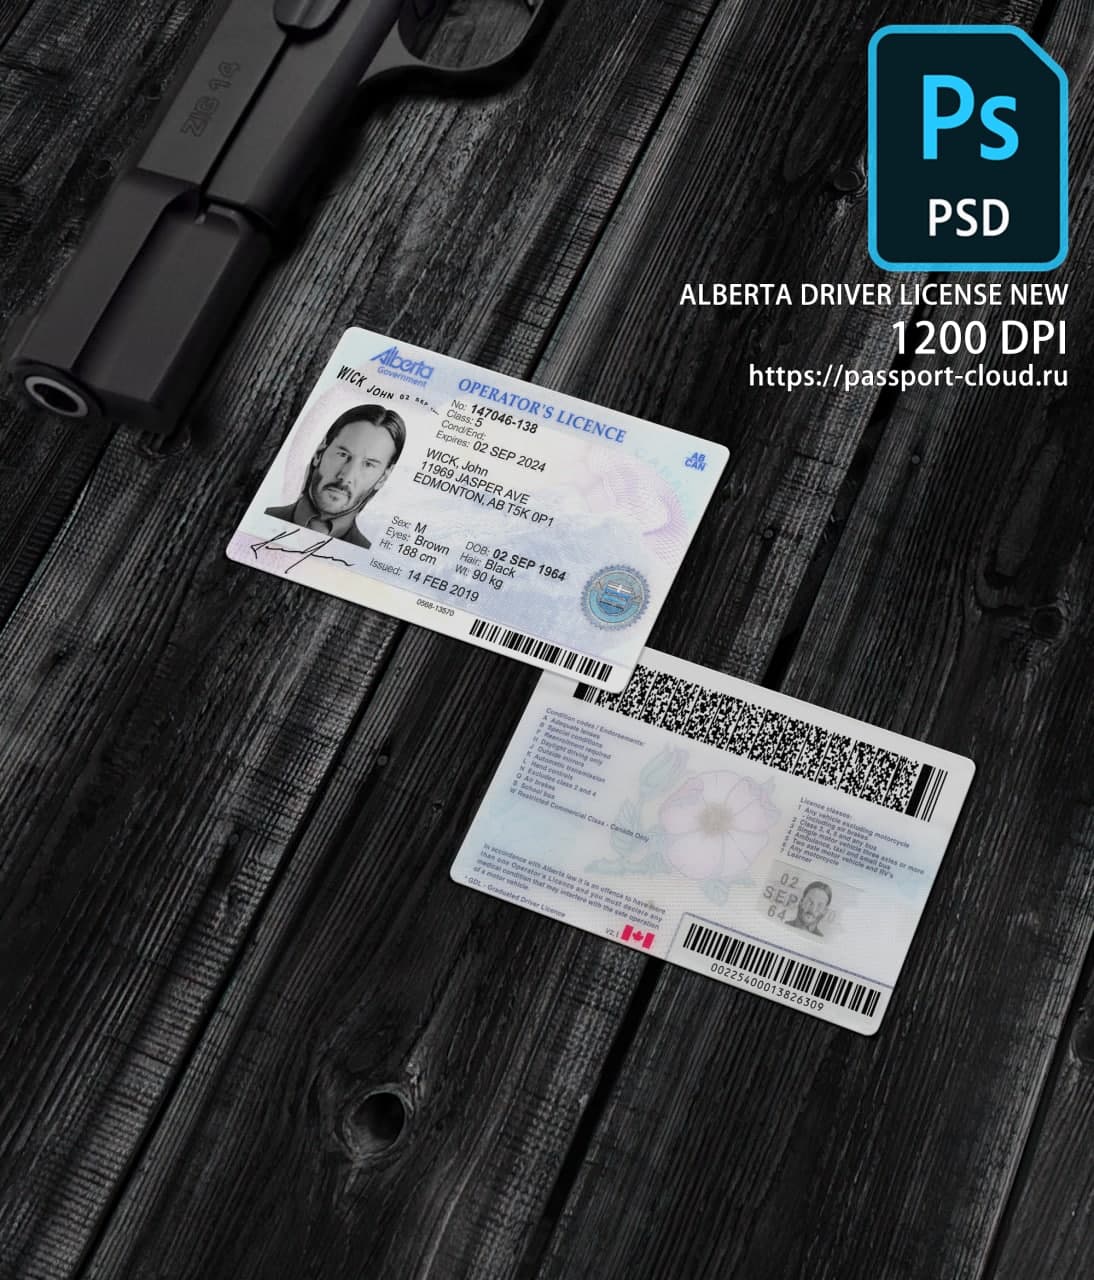 Alberta Driver License NEW1